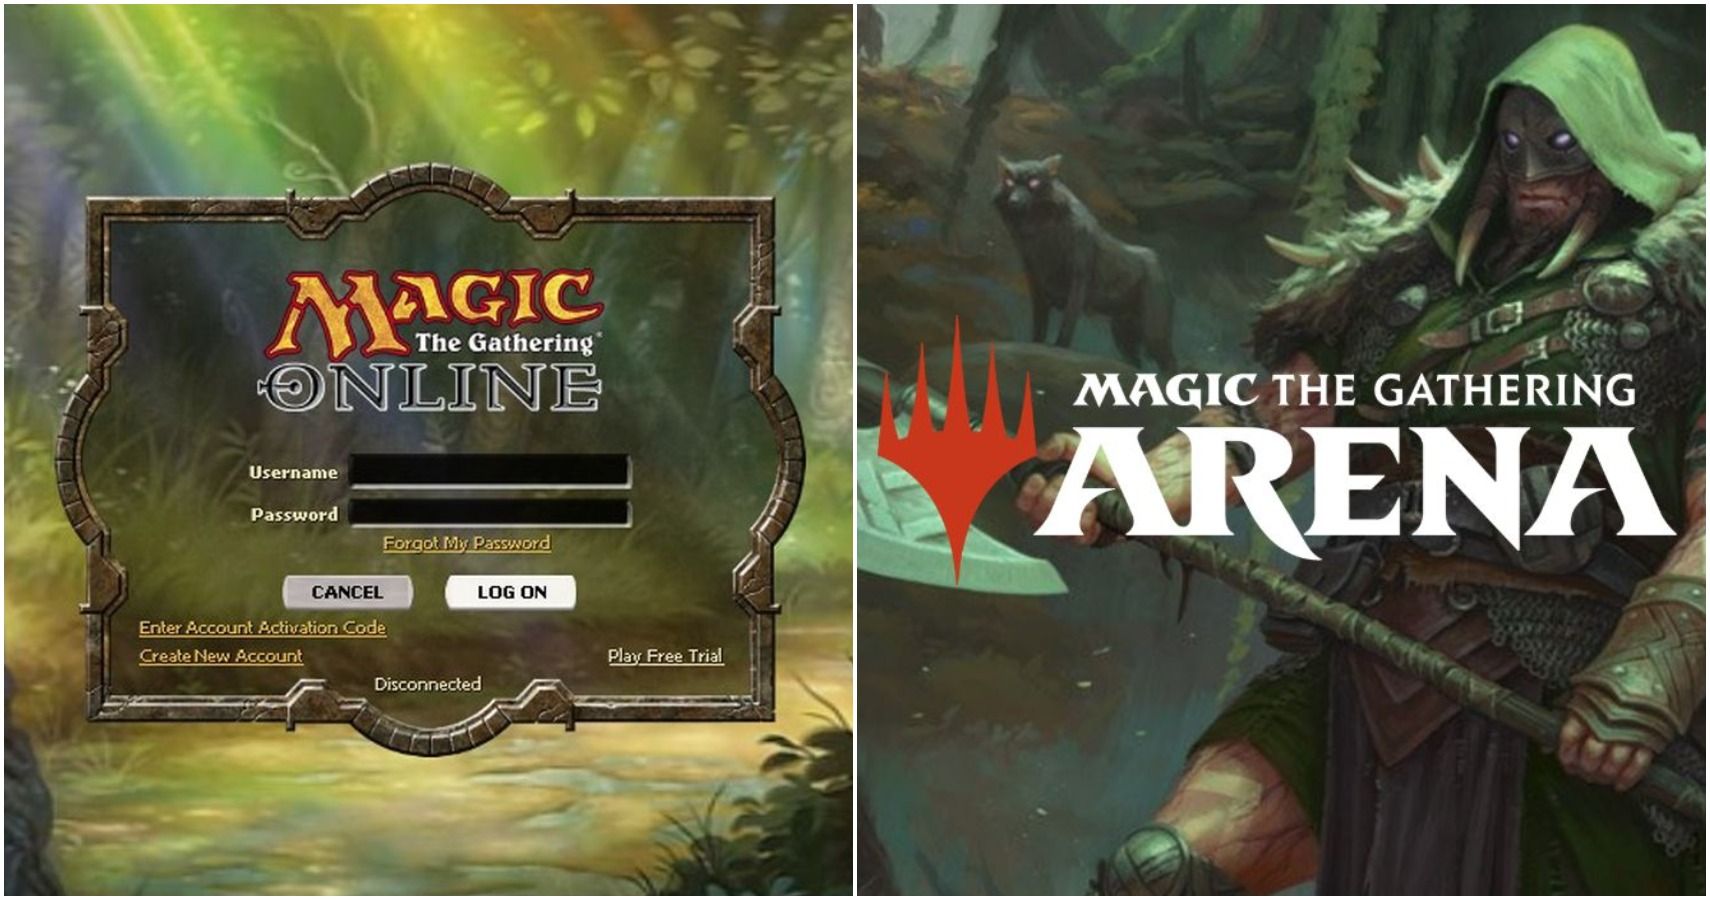 Magic Online versus Magic Arena